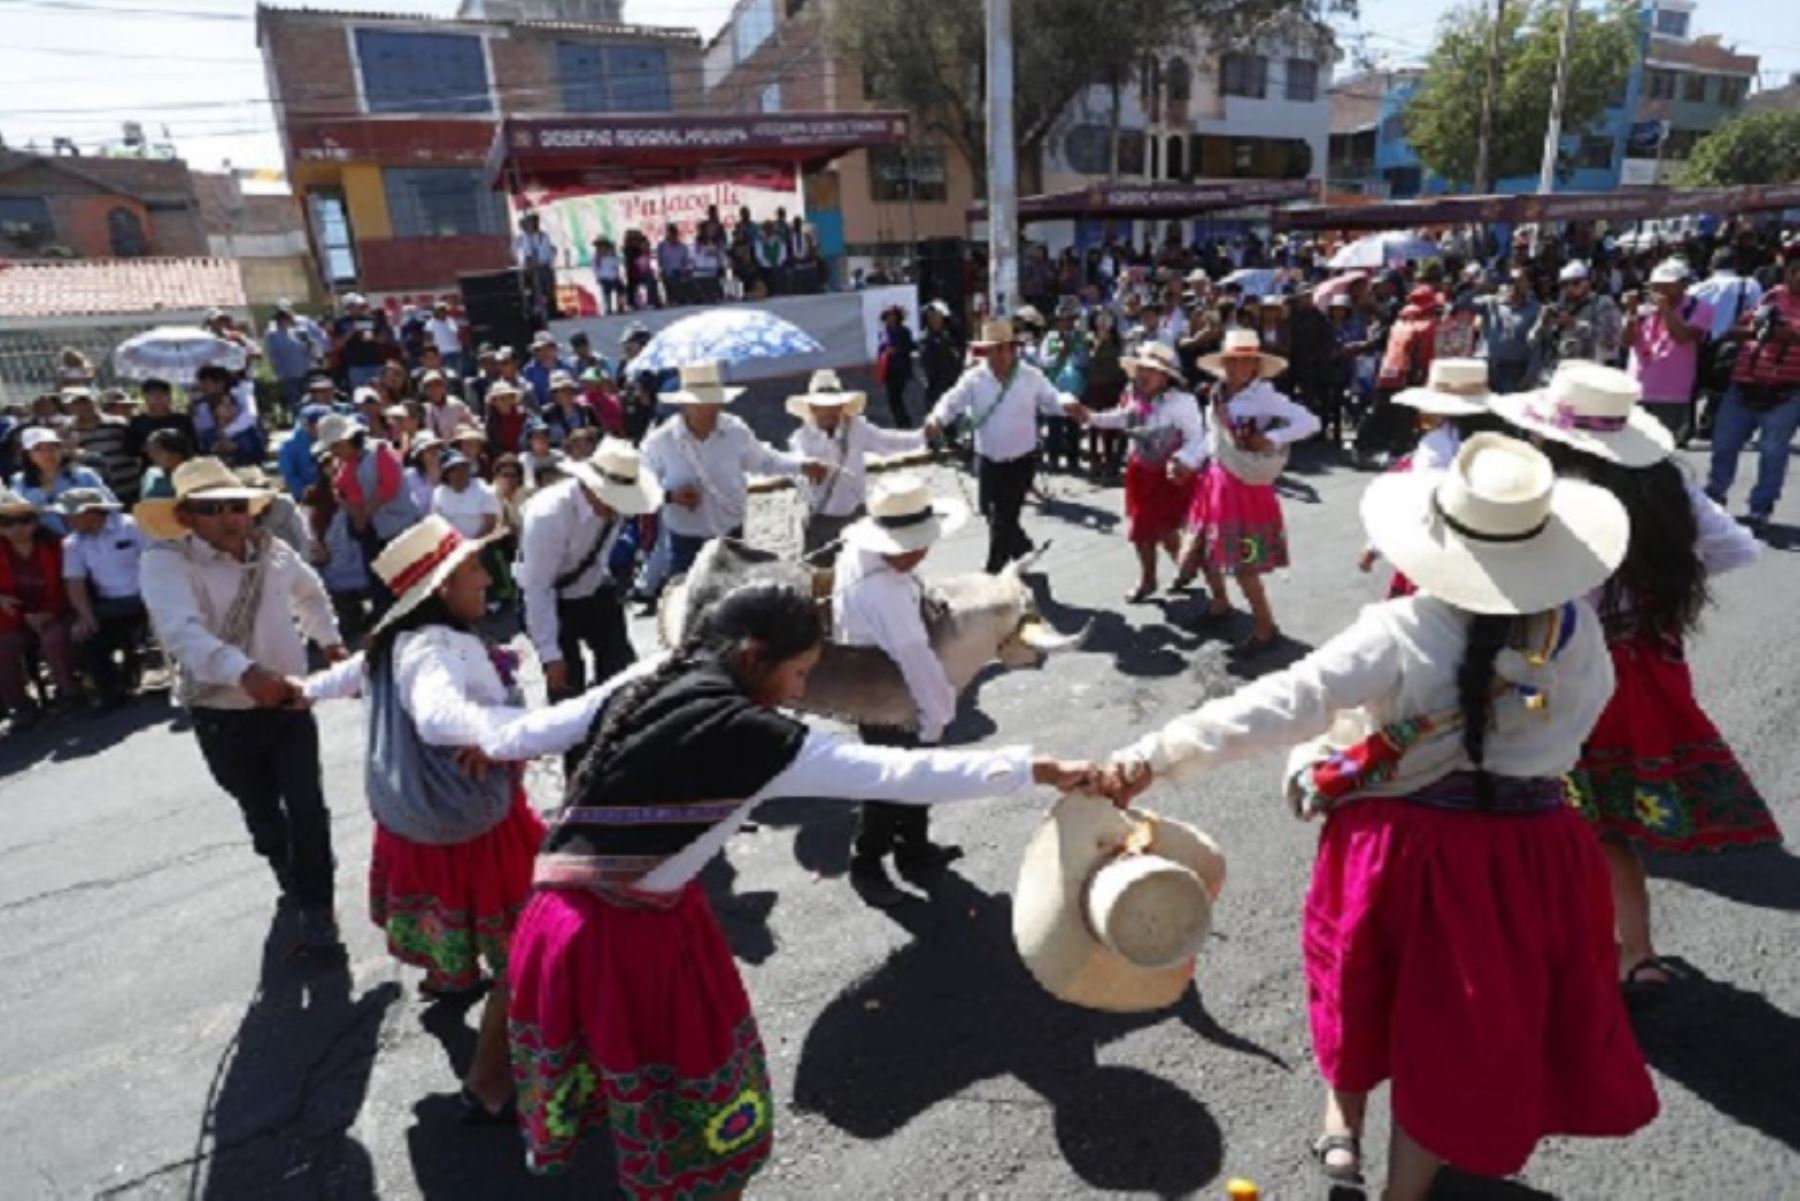 Todo va quedando listo para el Décimo Pasacalle Regional 2018 a realizarse este domingo 5 de agosto, con motivo del 478° aniversario de fundación española de la ciudad de Arequipa, en la que se espera la participación de más de 2,000 pobladores de las ocho provincias, quienes bailarán las danzas típicas de su región. ANDINA/Difusión